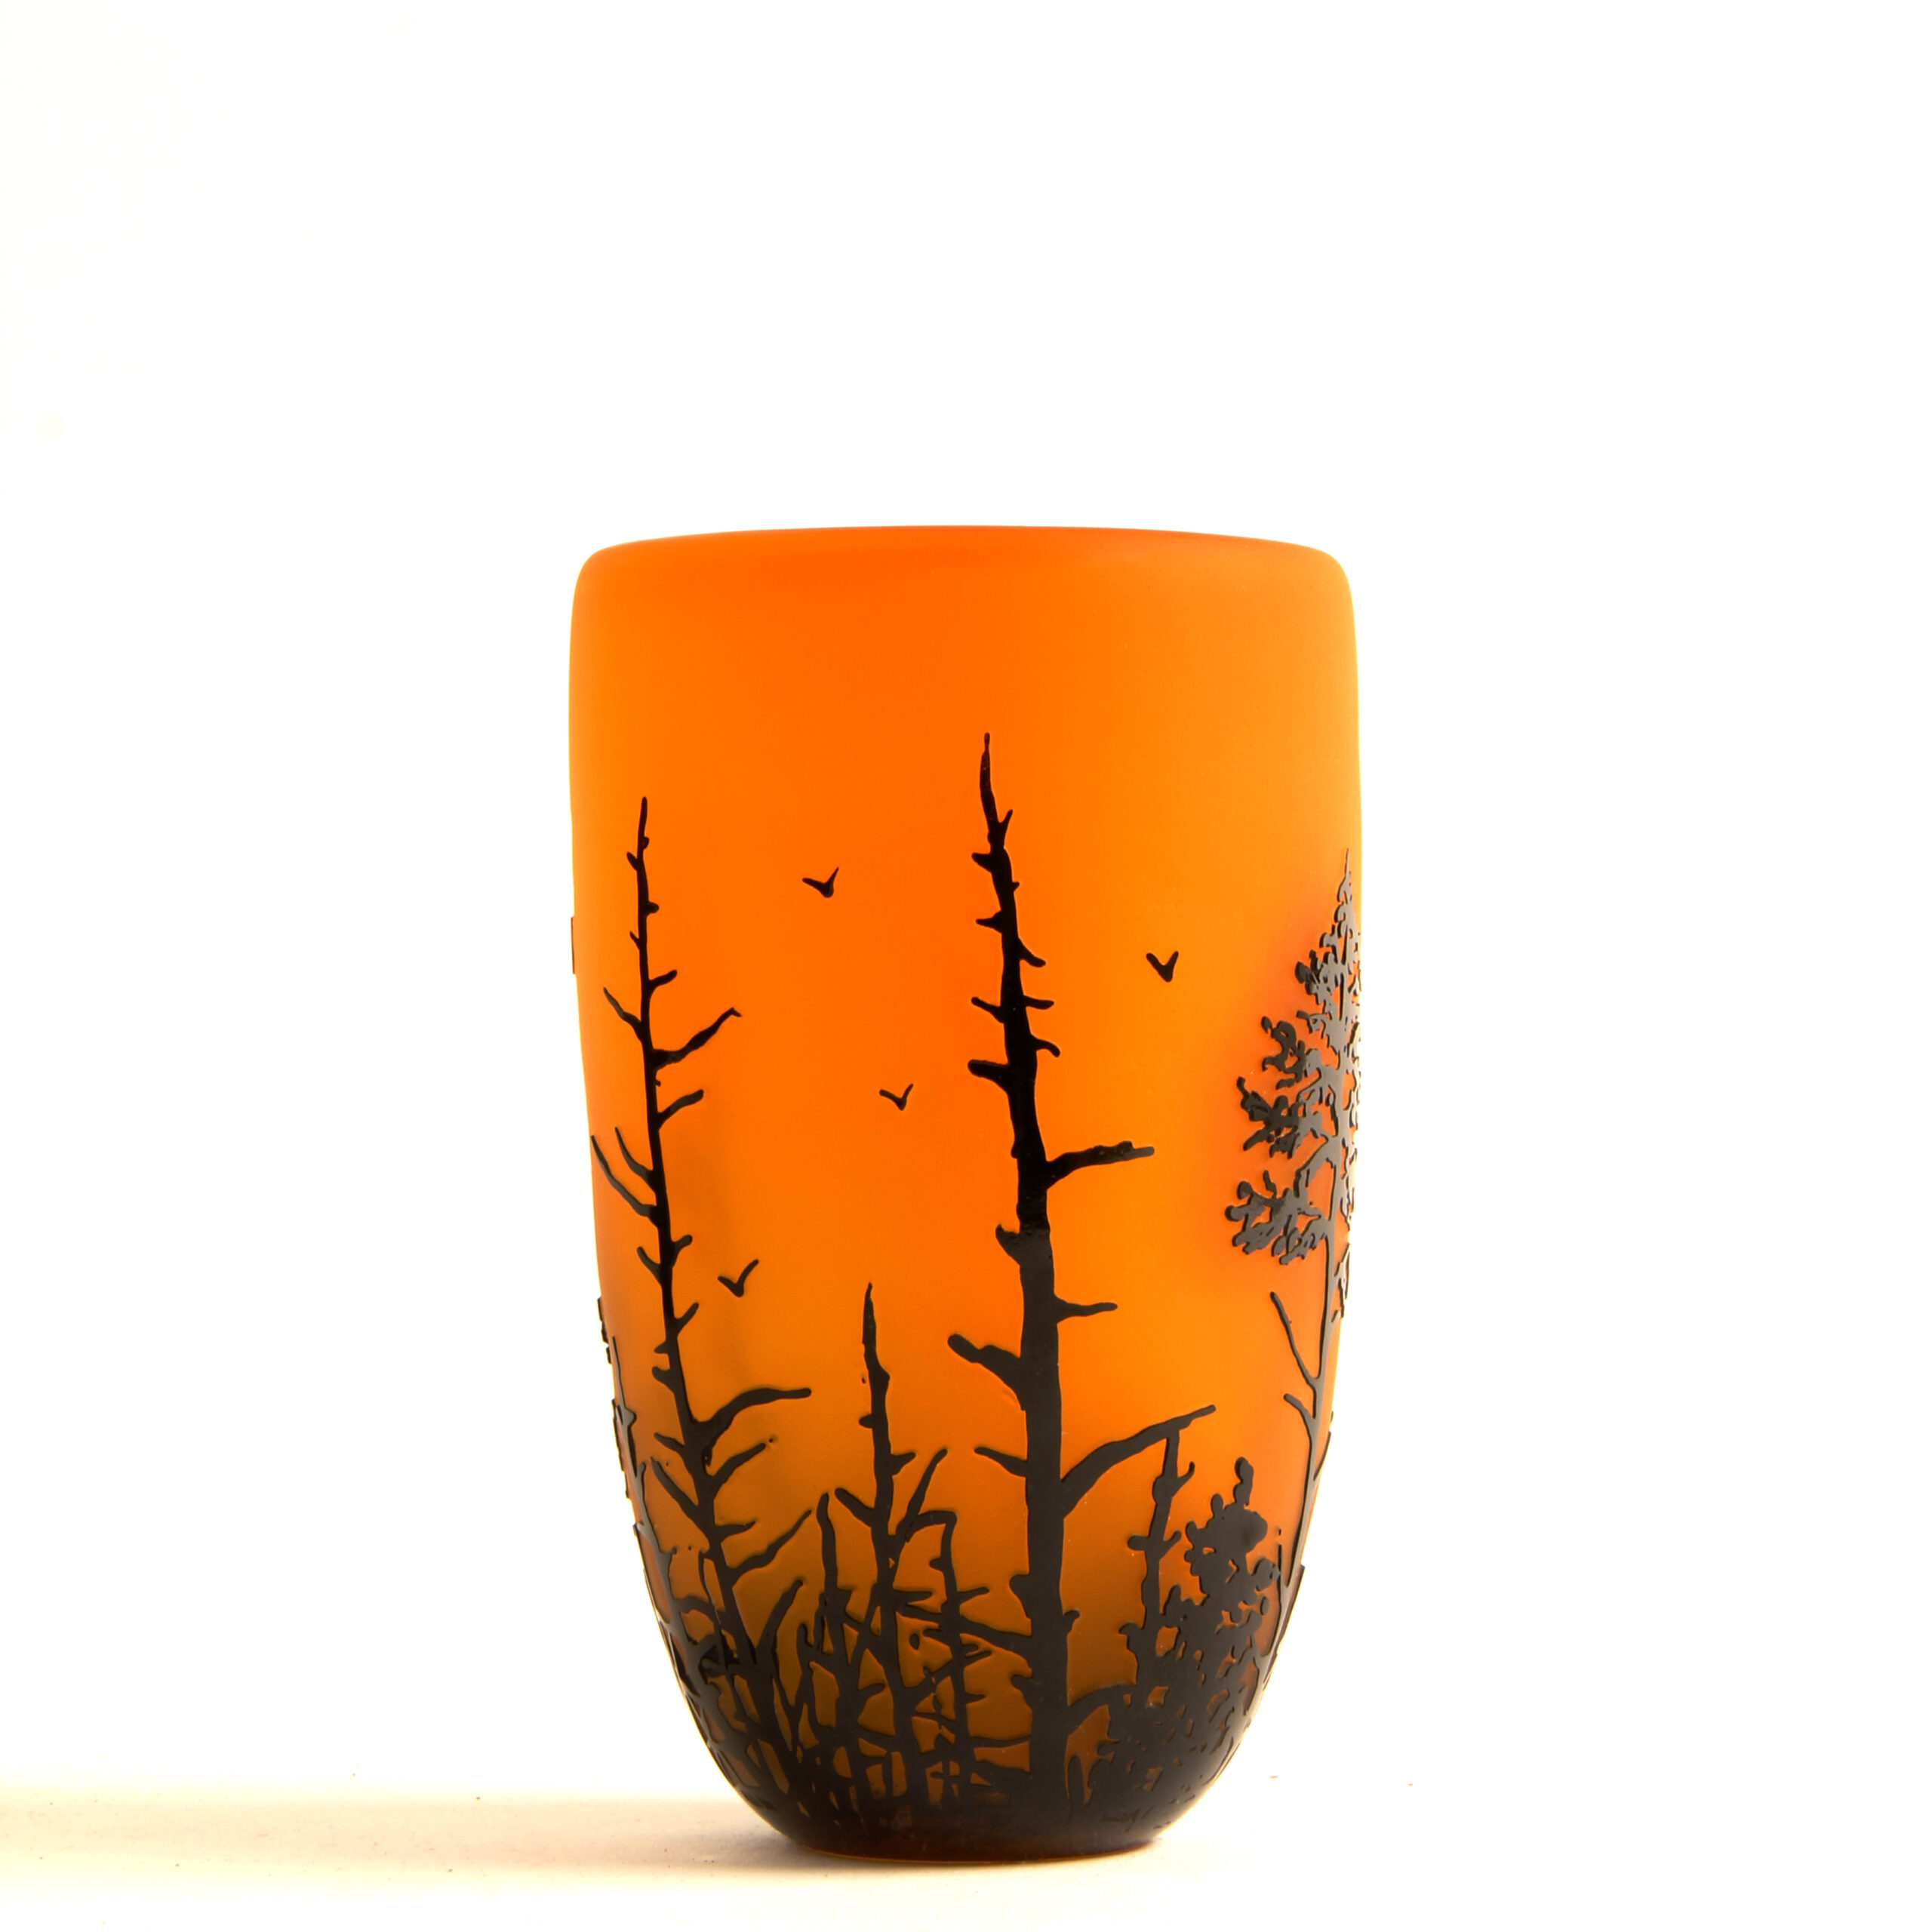 Carol Nesbitt: Saffron Vase with Black Trees and Birds Product Image 1 of 2